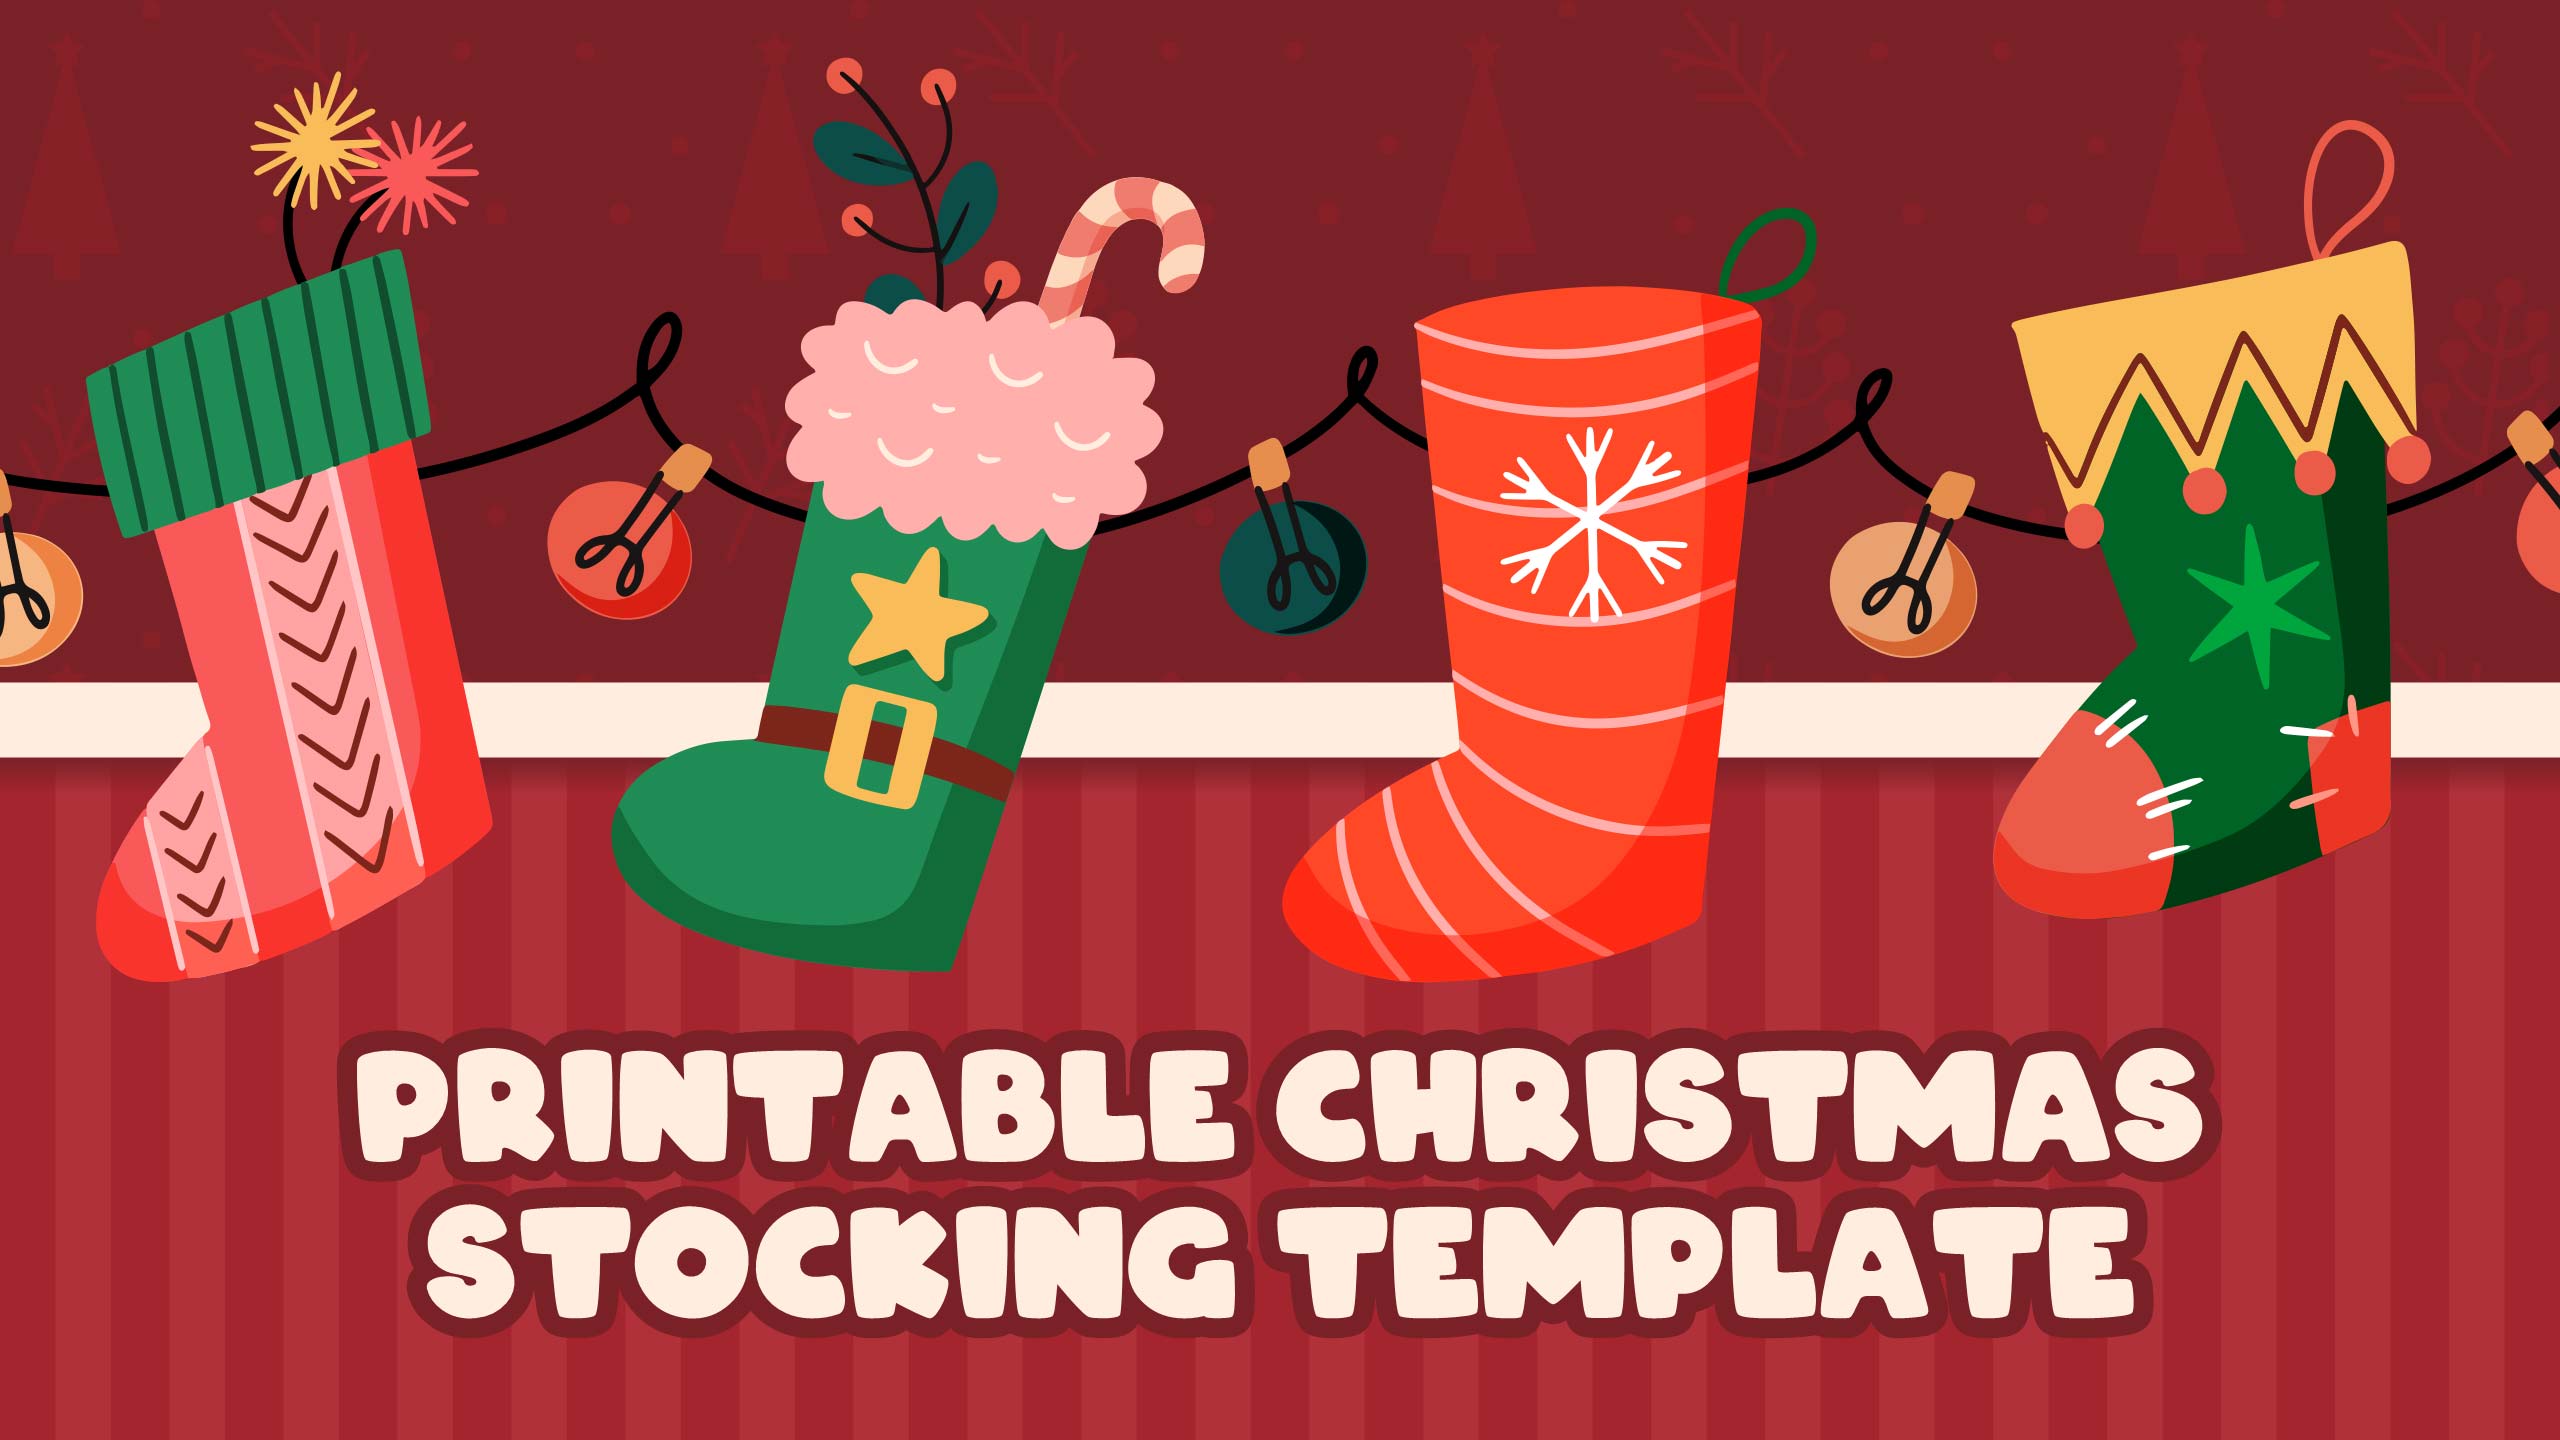 Printable Christmas Stocking Template